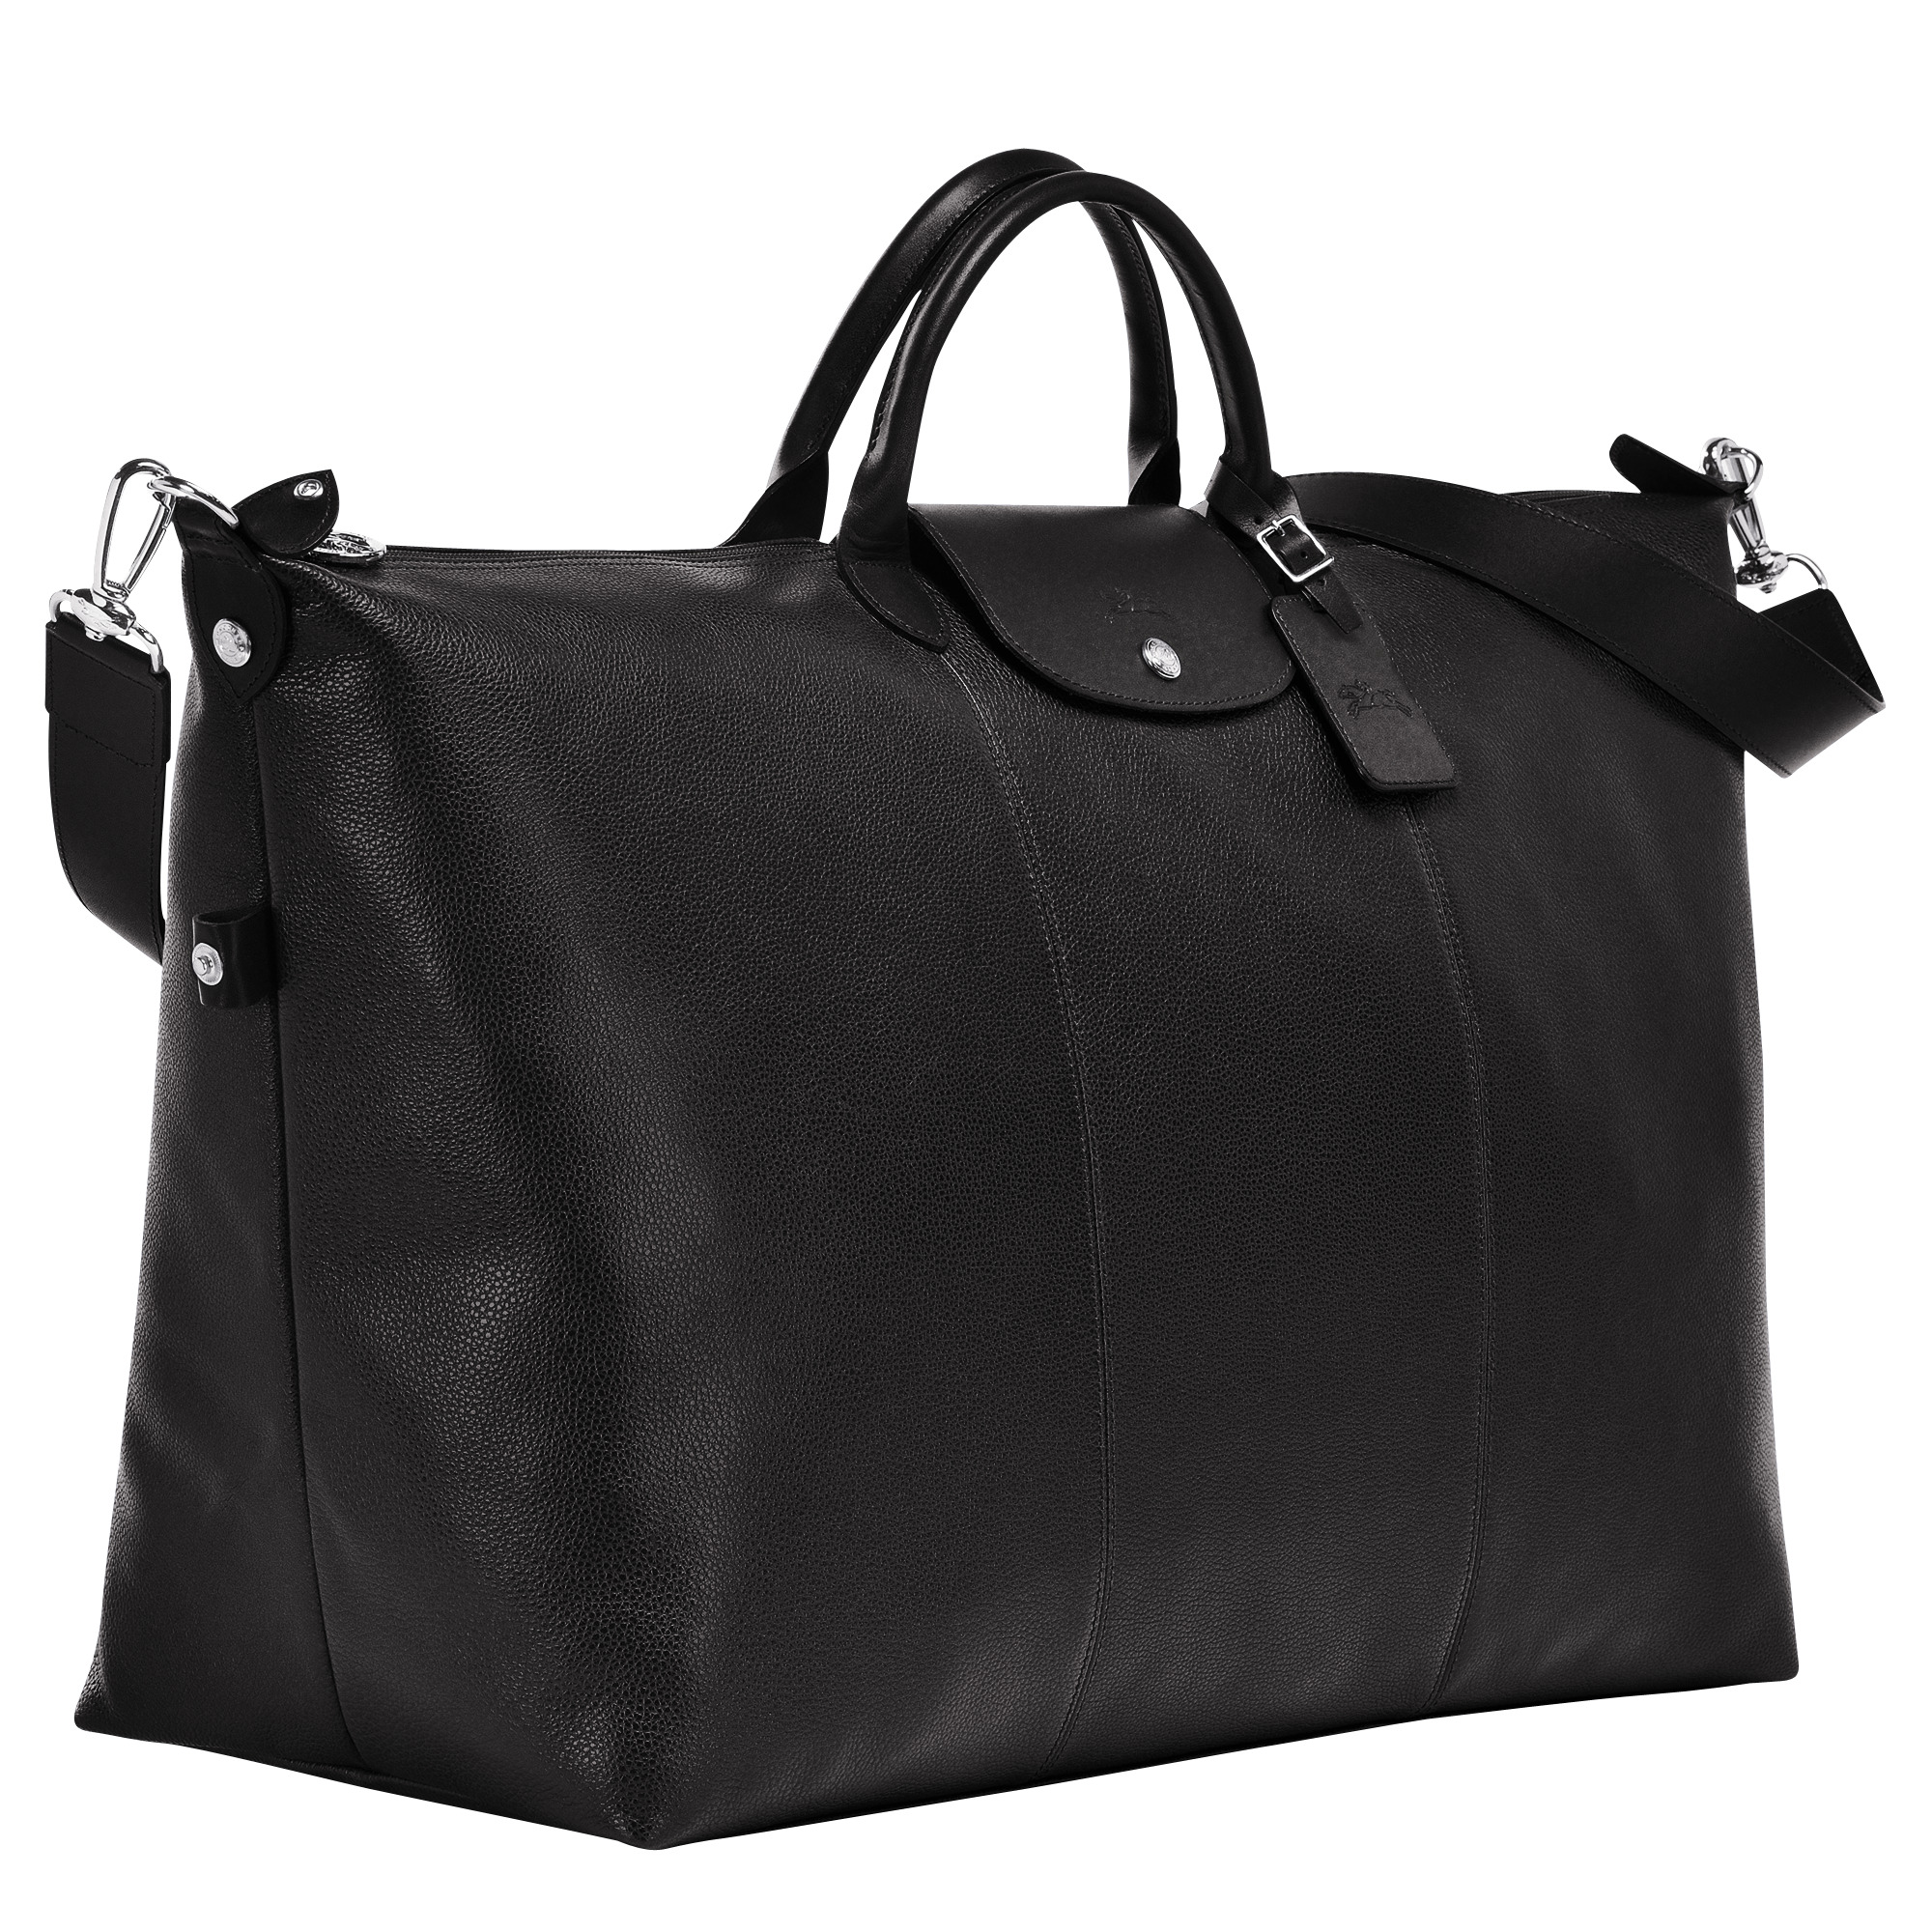 Le Foulonné S Travel bag Black - Leather - 3